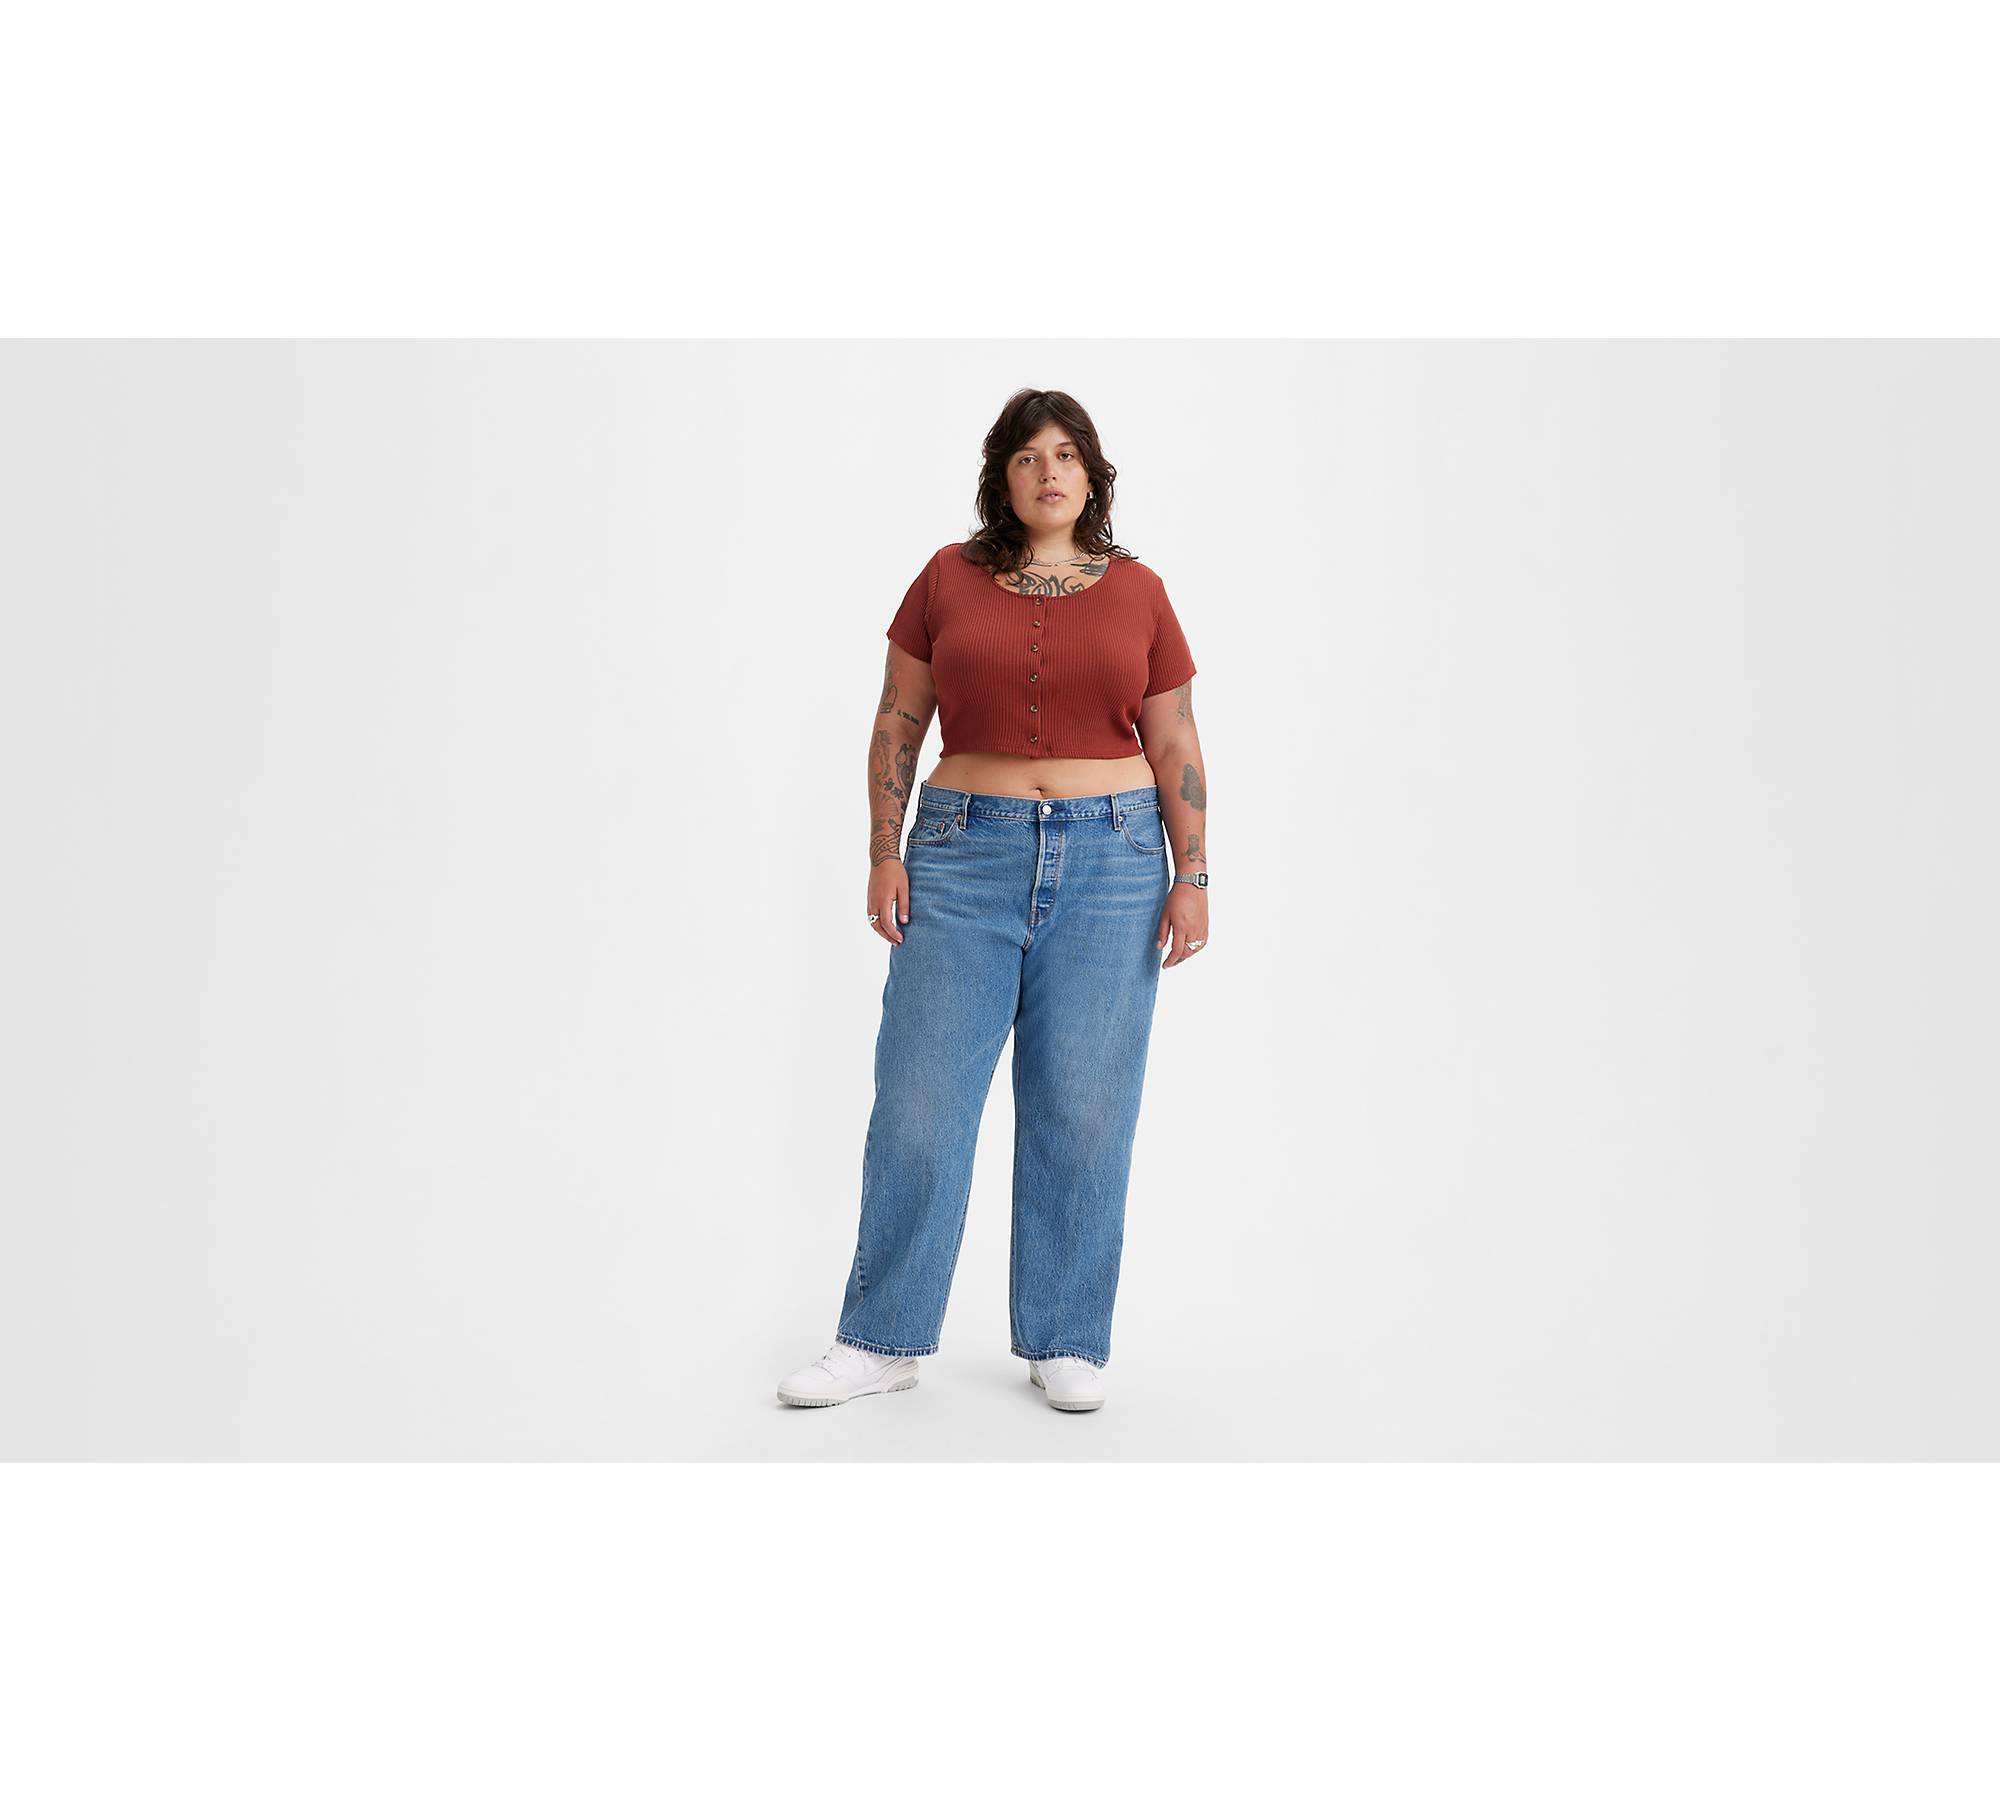 '90s Women's Jeans (plus Size) - Medium Wash US